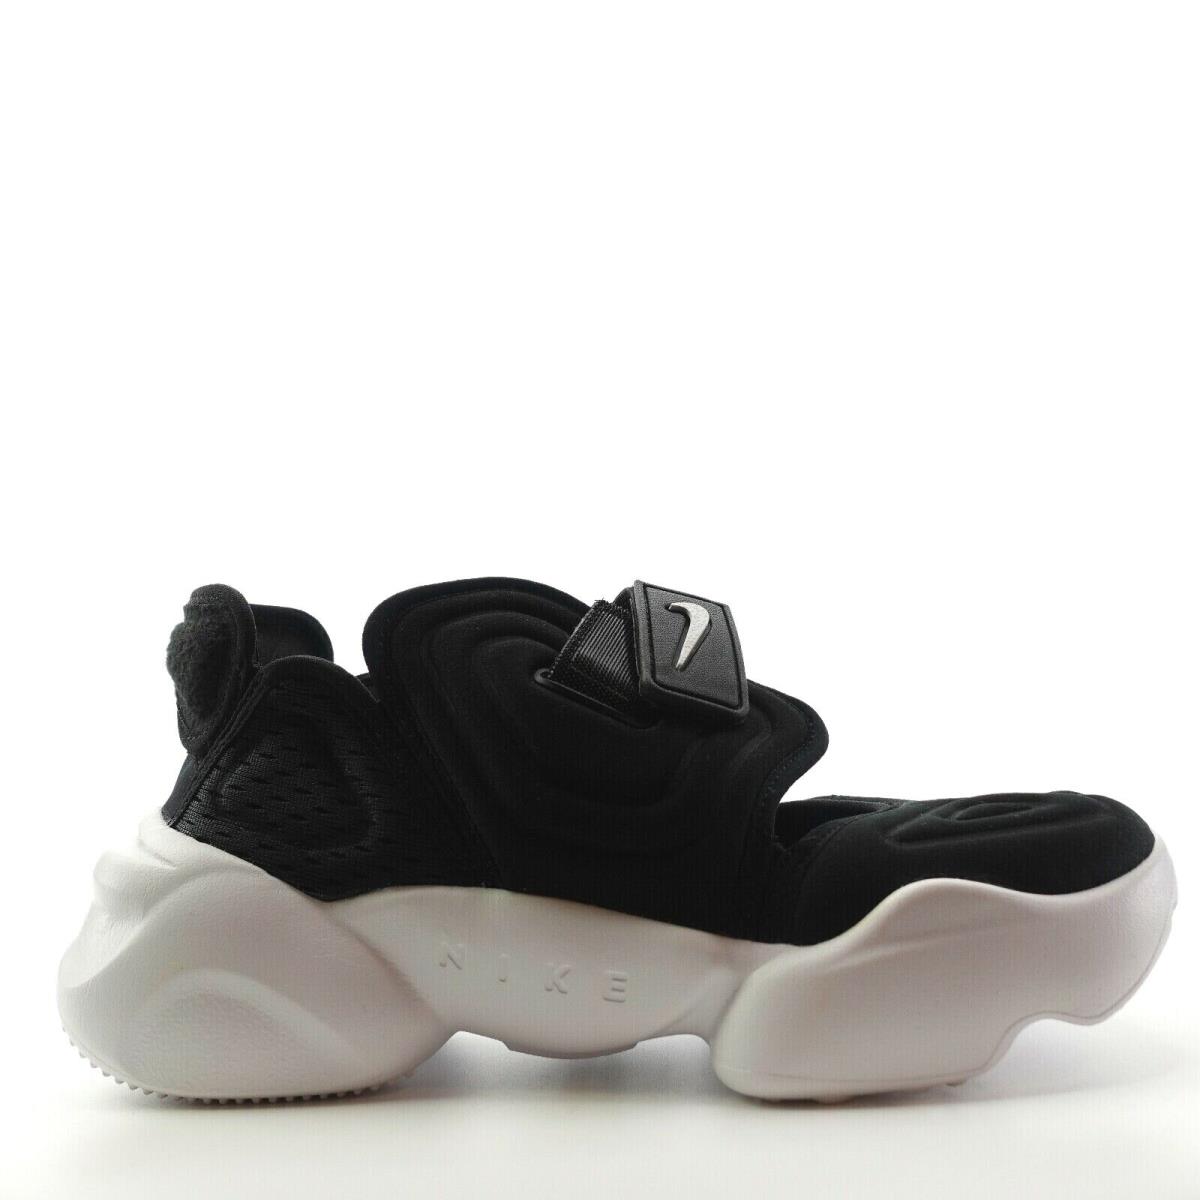 Nike Aqua Rift Black White Split Toe Shoes Womens Size 7 CW7164-001